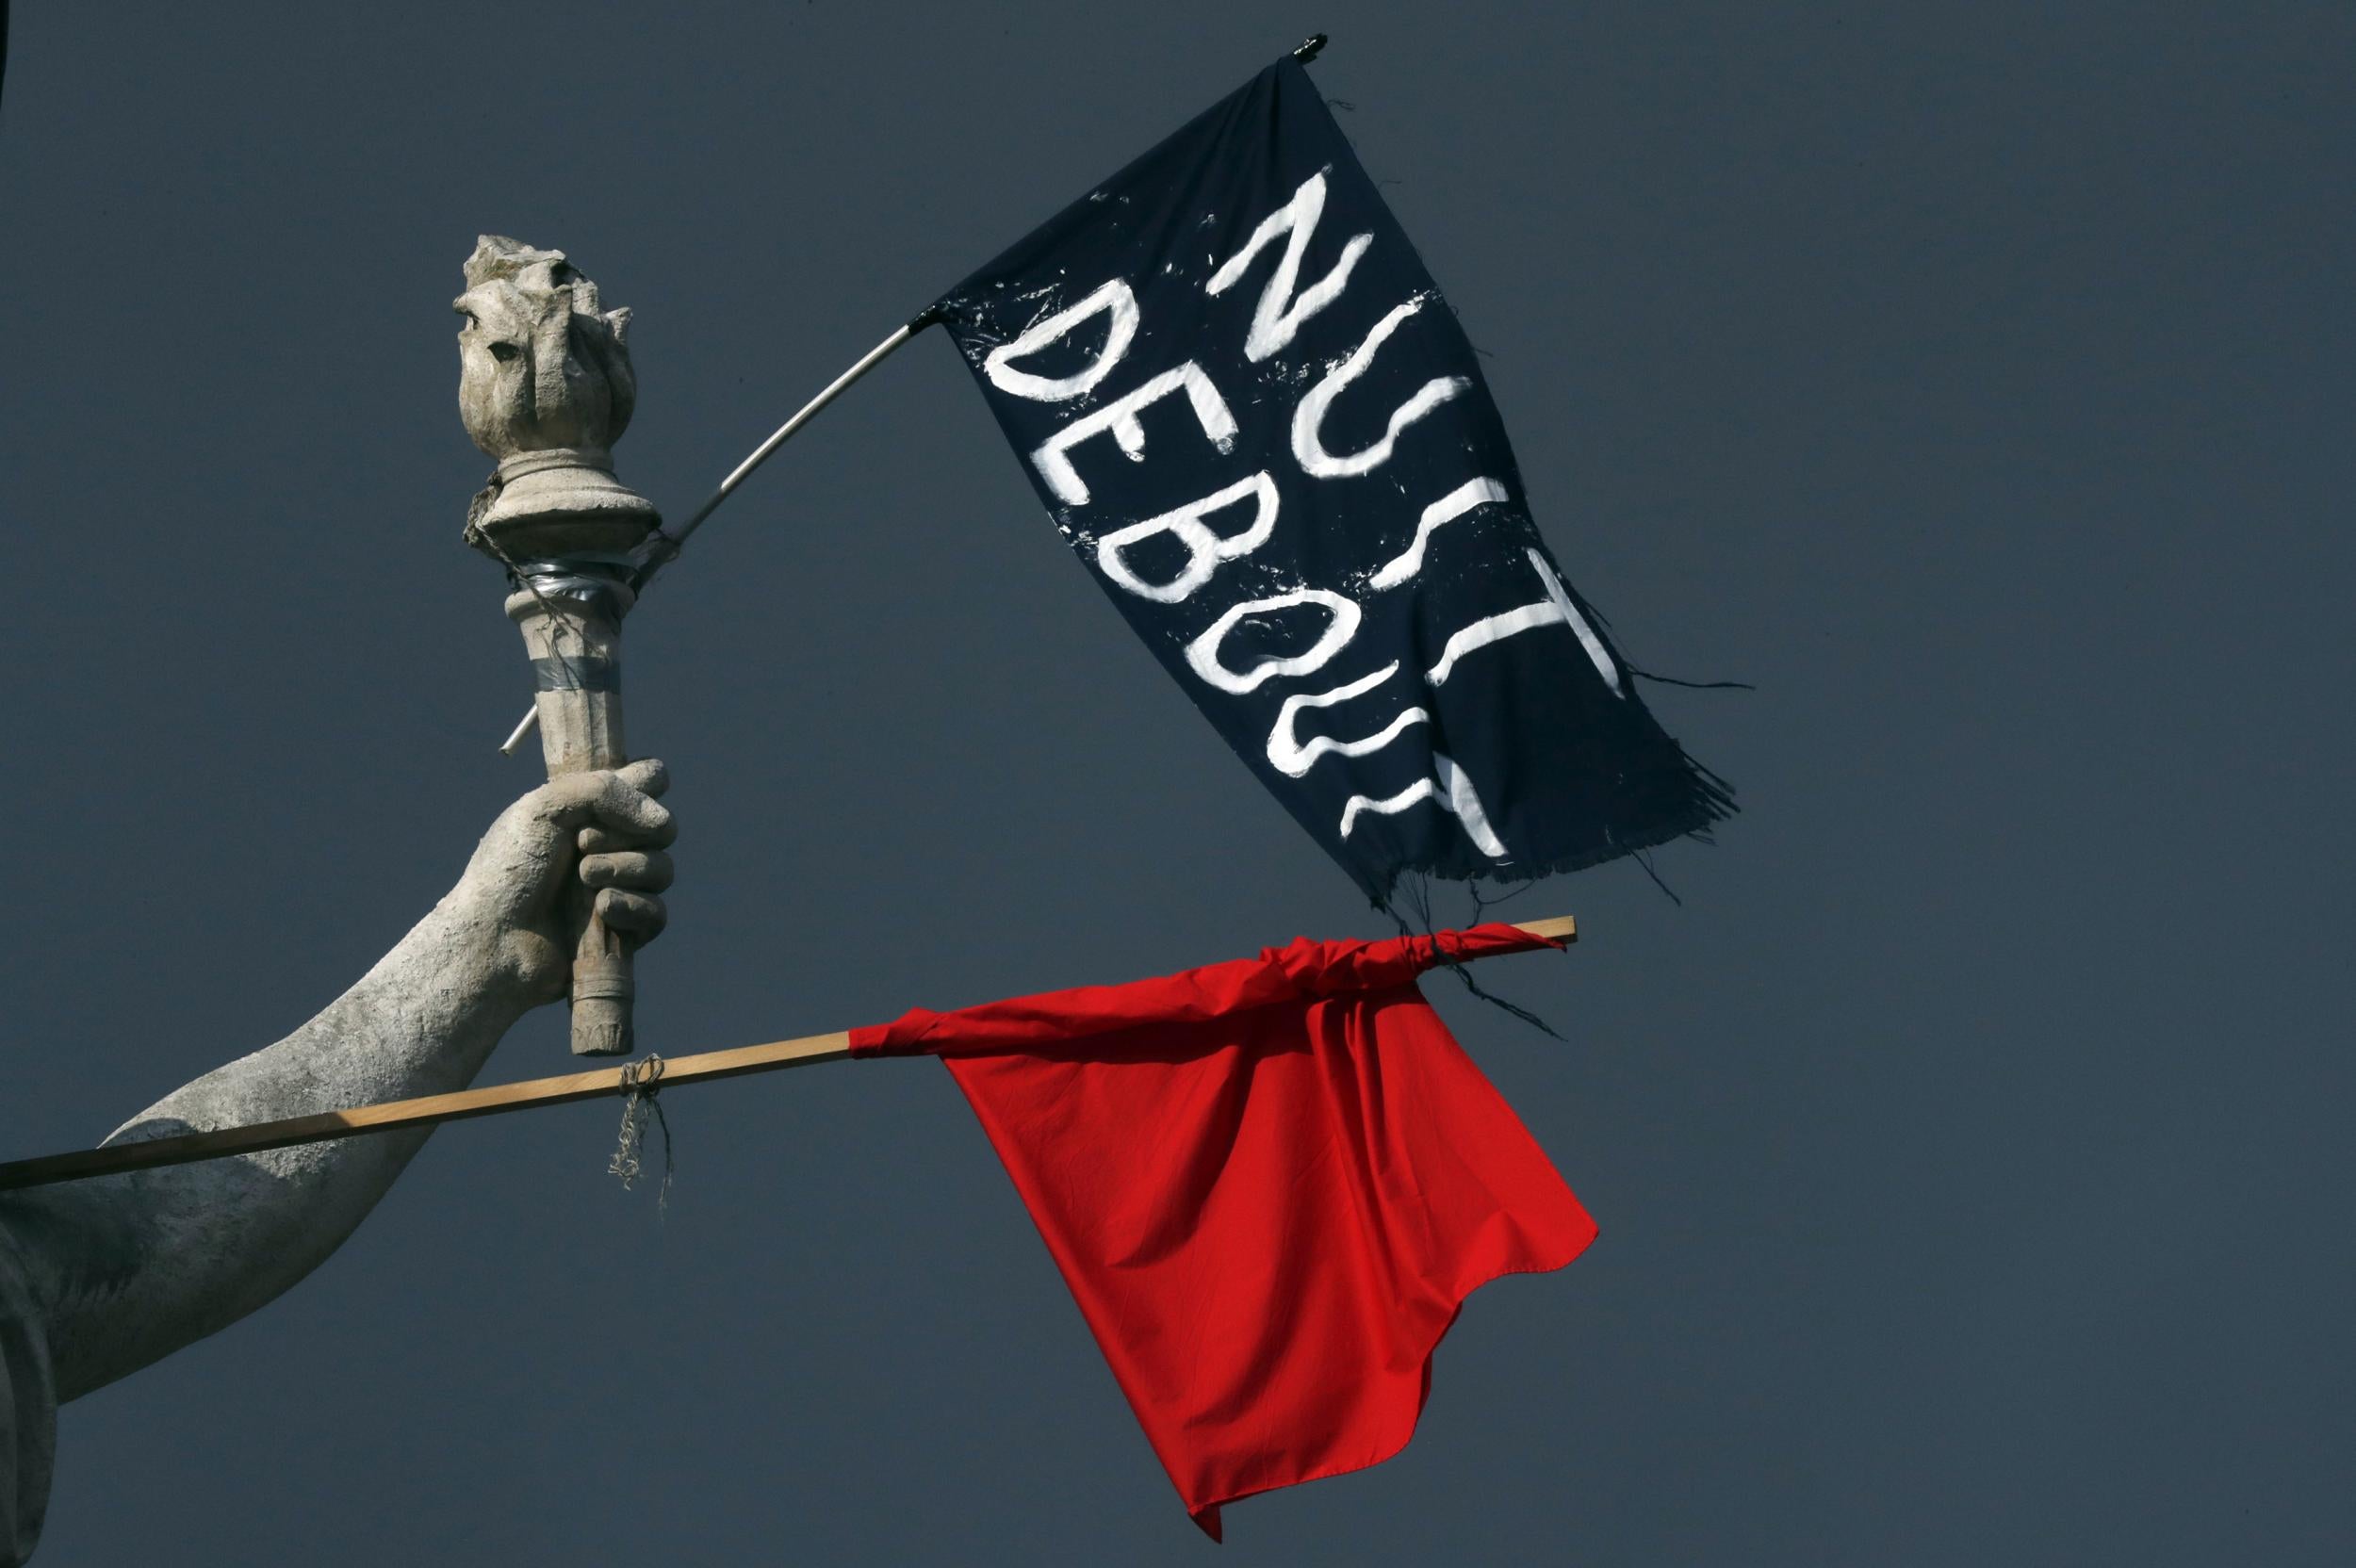 Flags of the 'Nuit Debout' movement hang off a statue in Place de la Republique in Paris